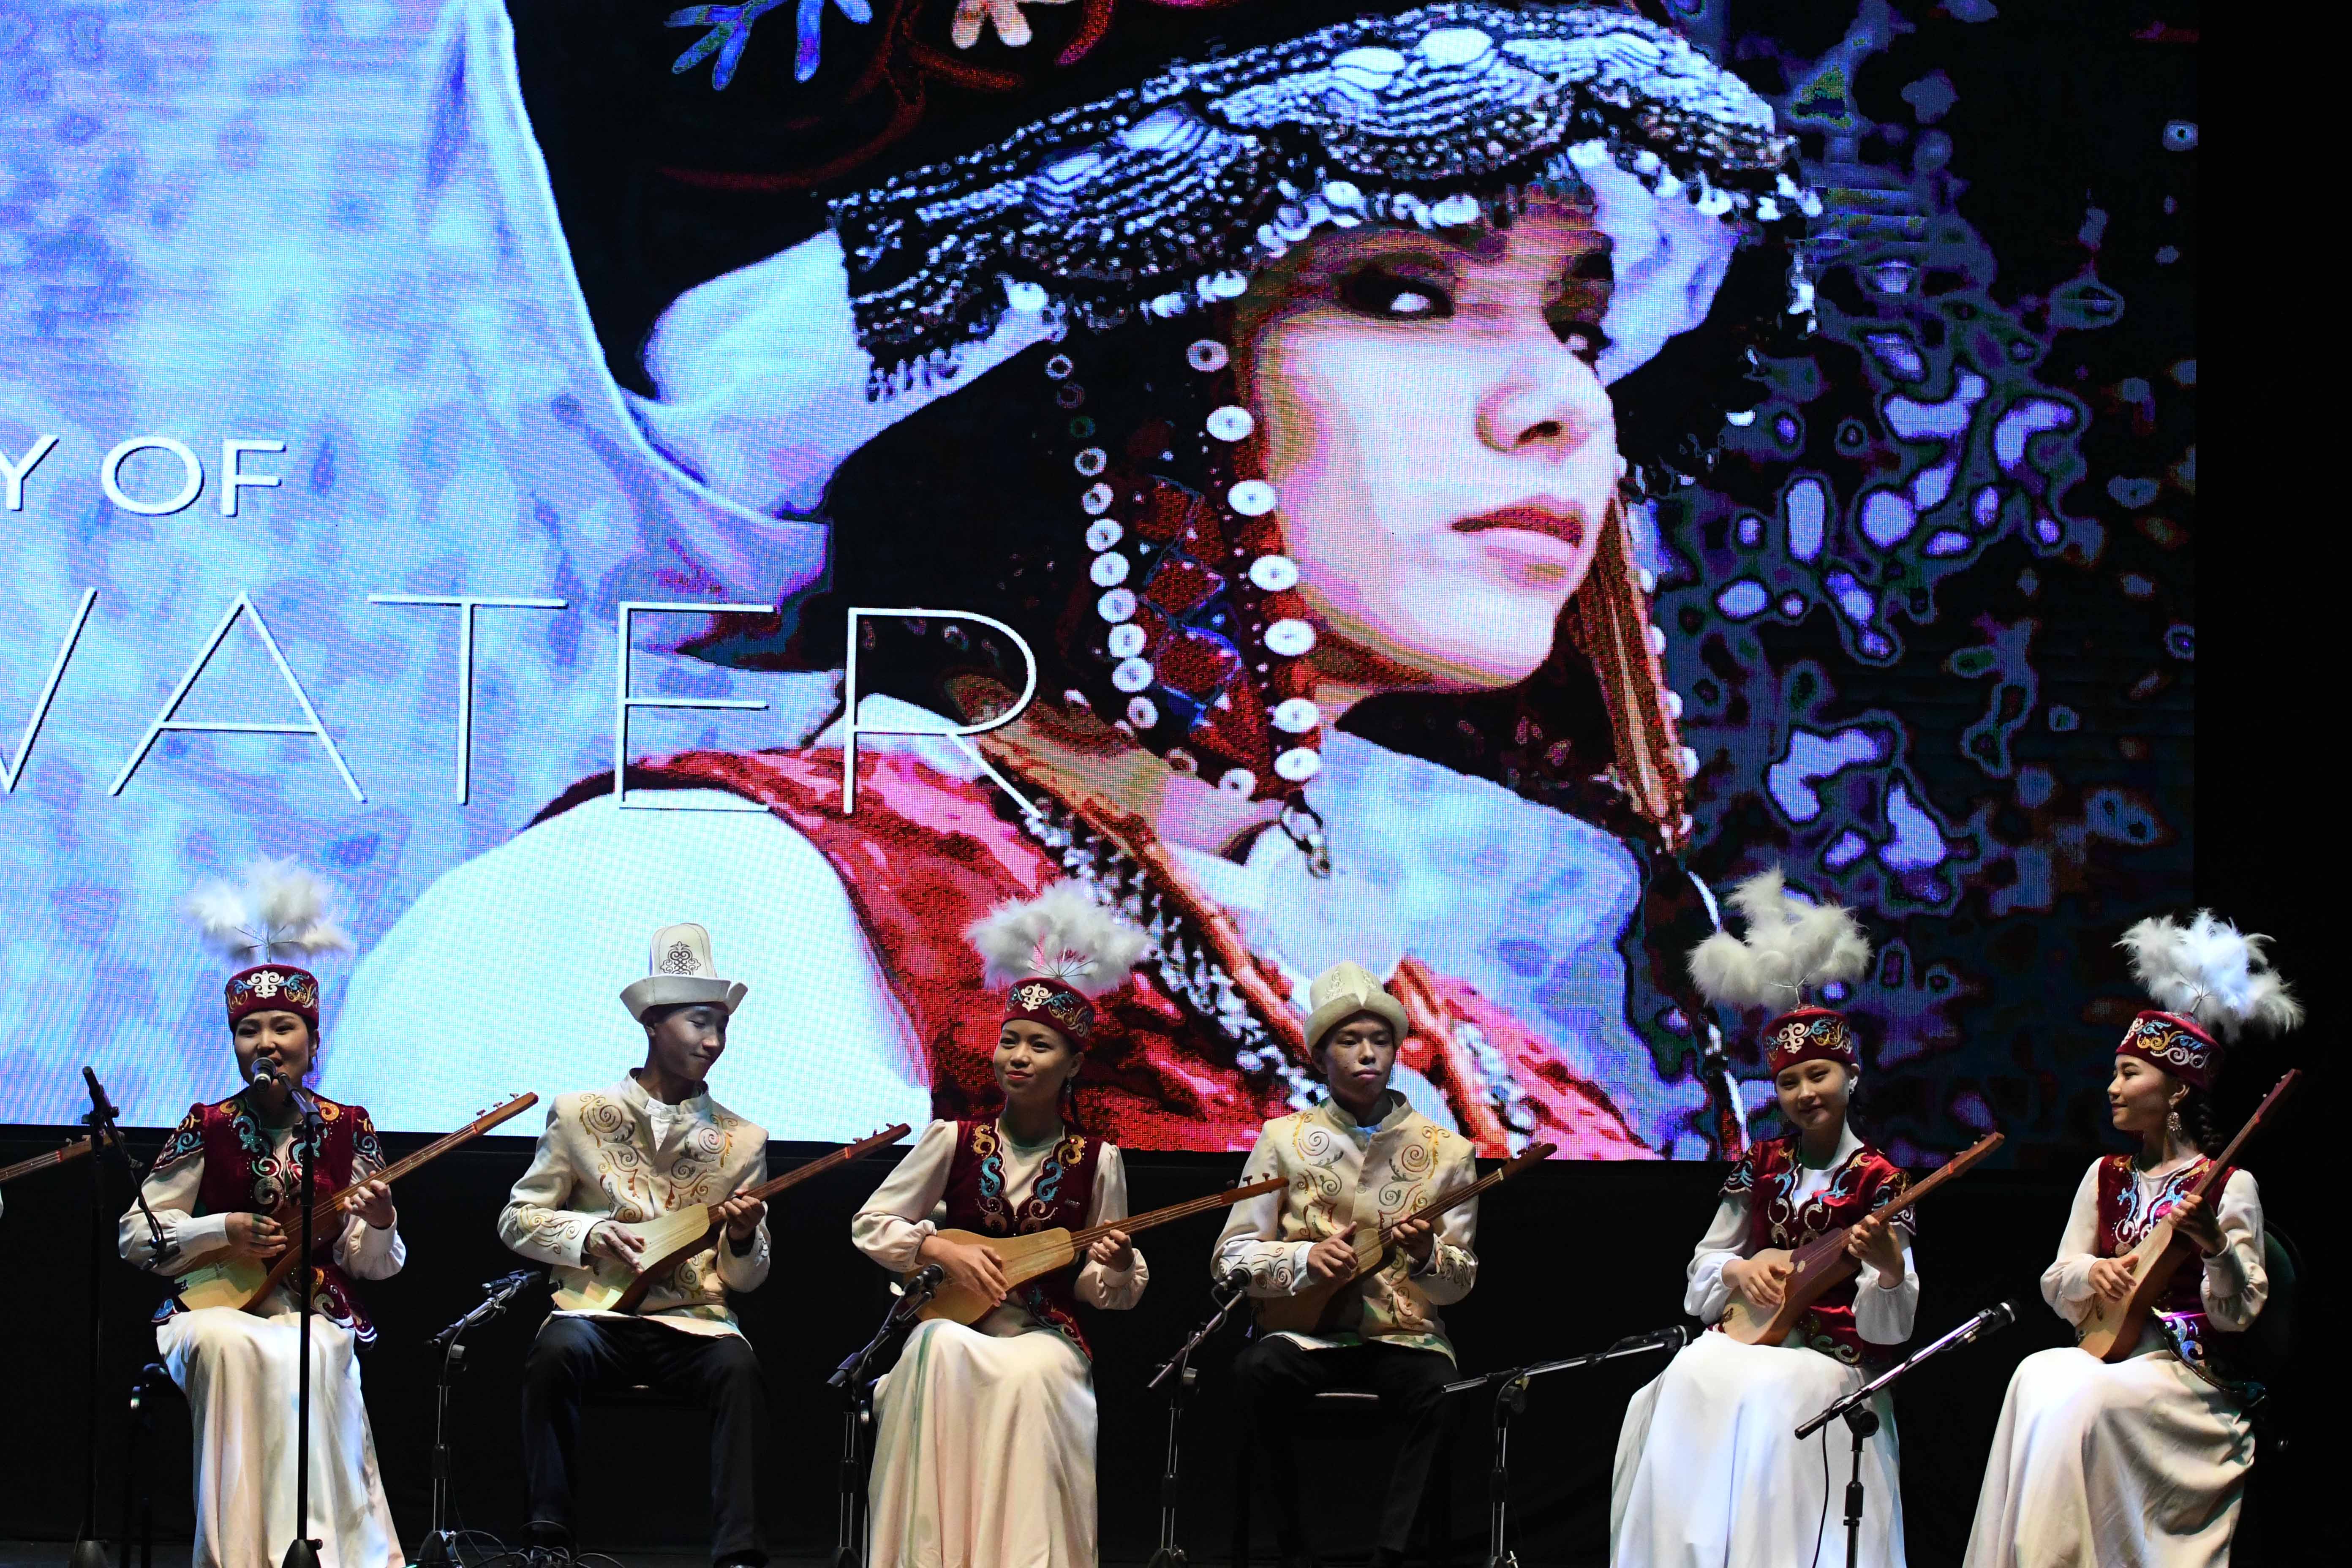 يعد القبز أو القمز أهم الآلات الموسيقية في الموسيقى القرغيزية